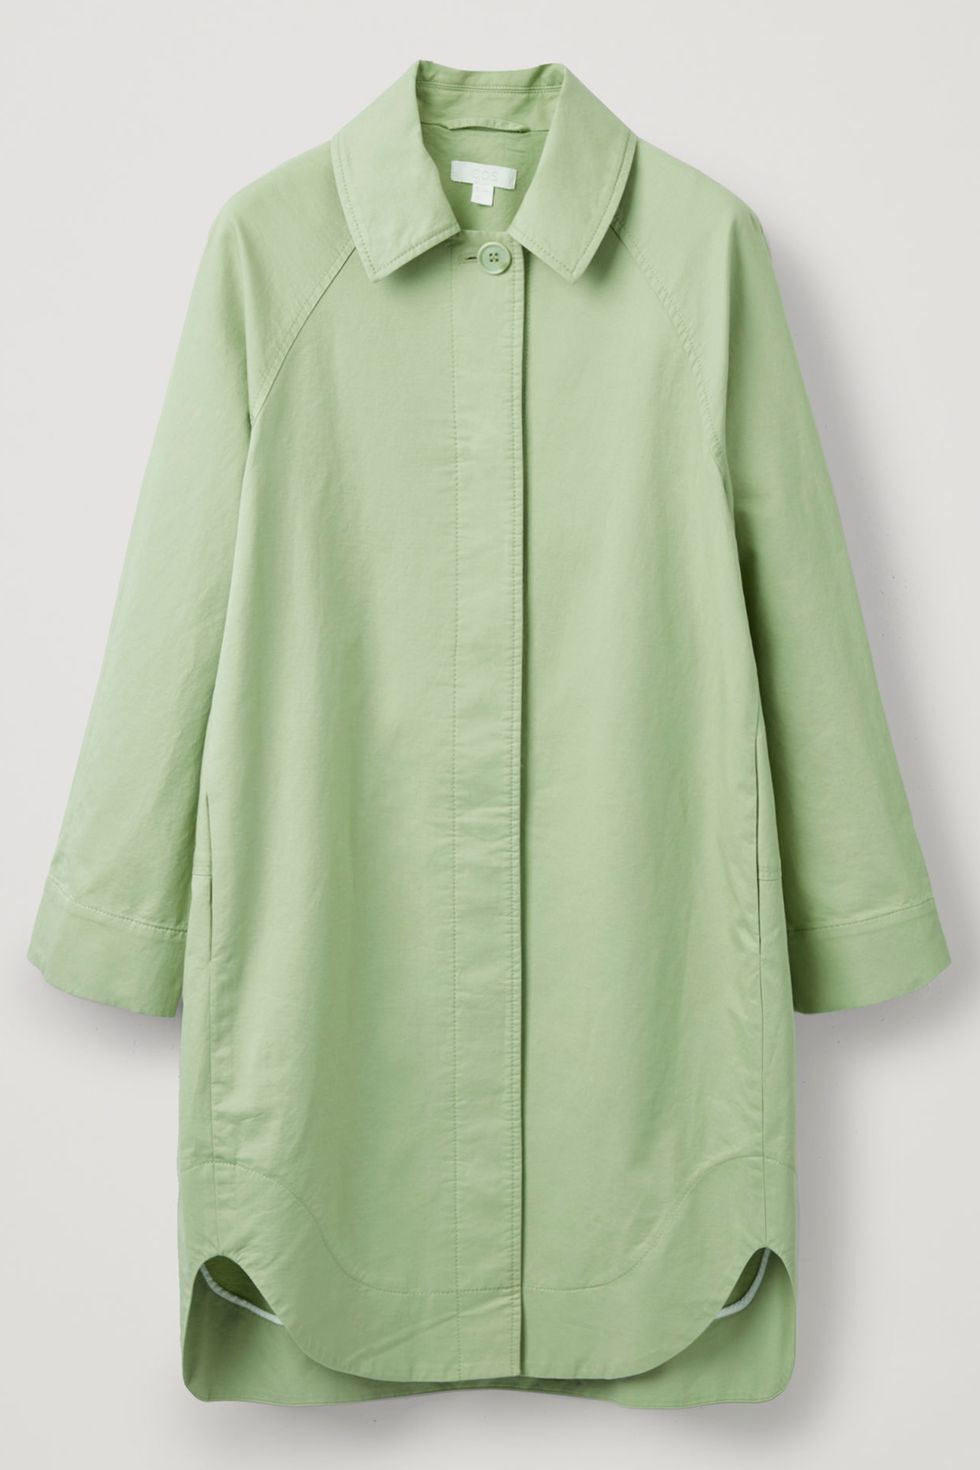 COS Shirt dress in light green